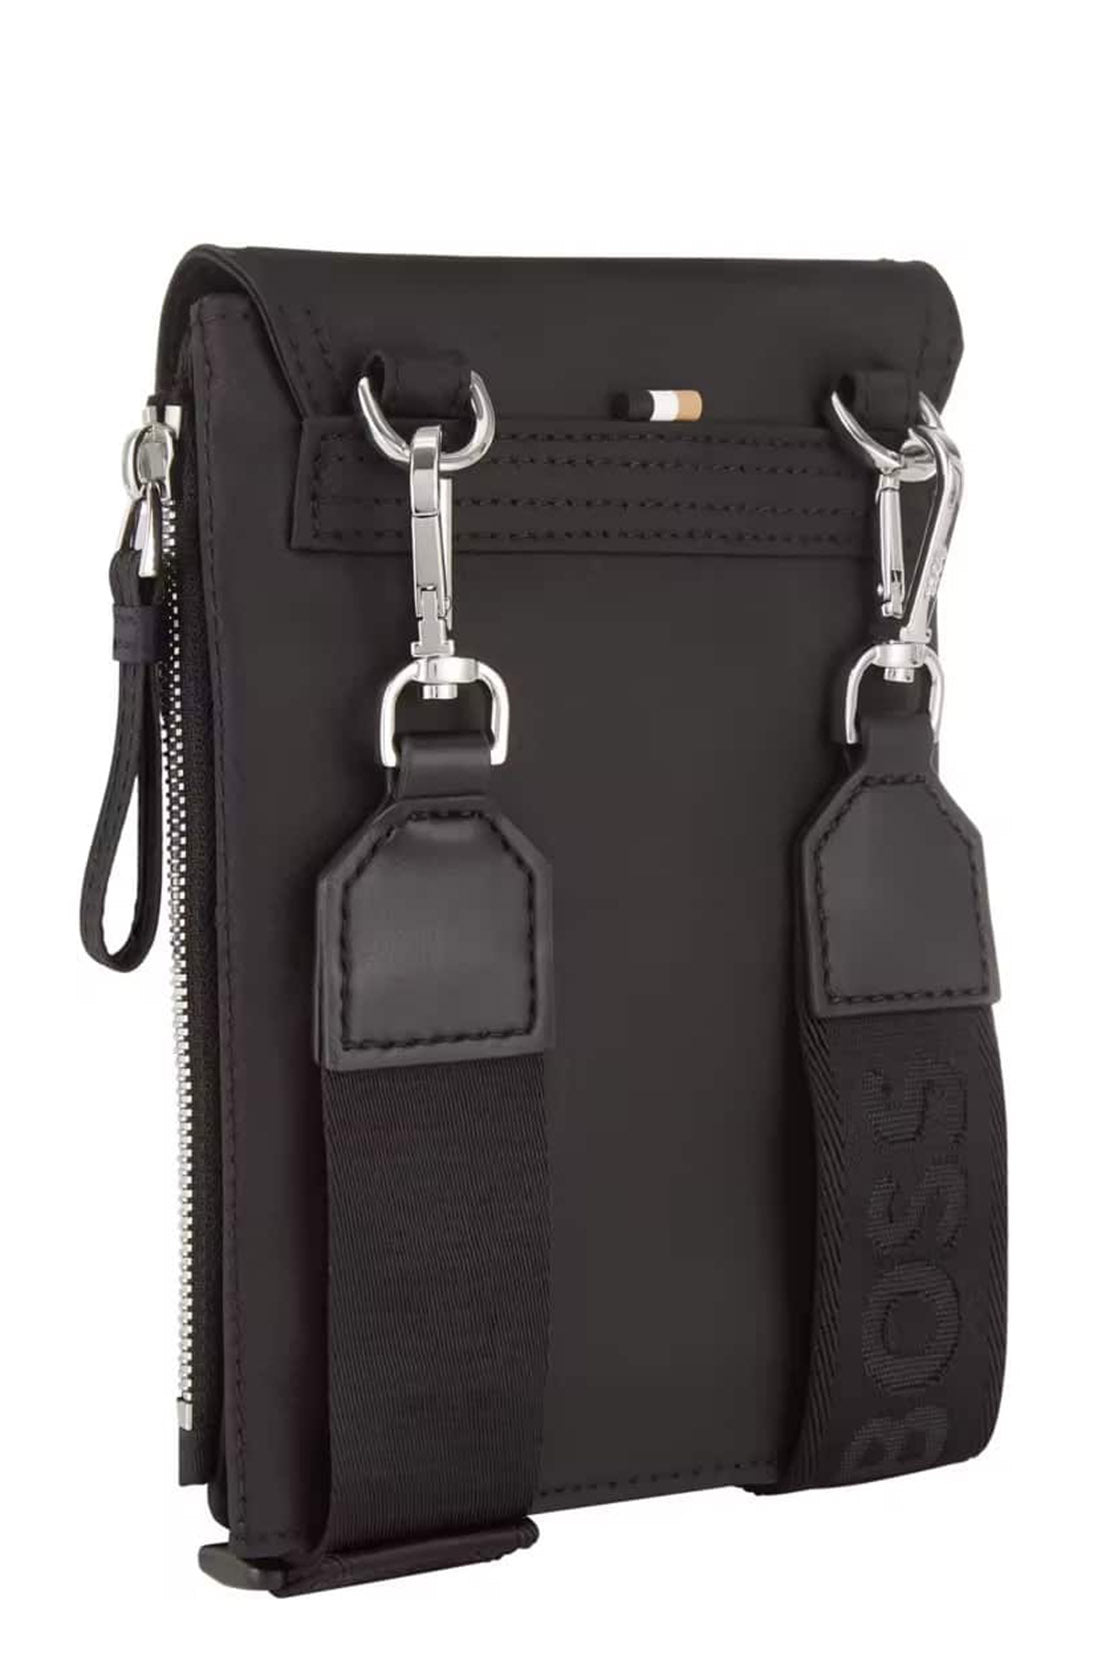 BOSS - LENNON Small Over Shoulder Phone Holder Bag in Black 5051270 001